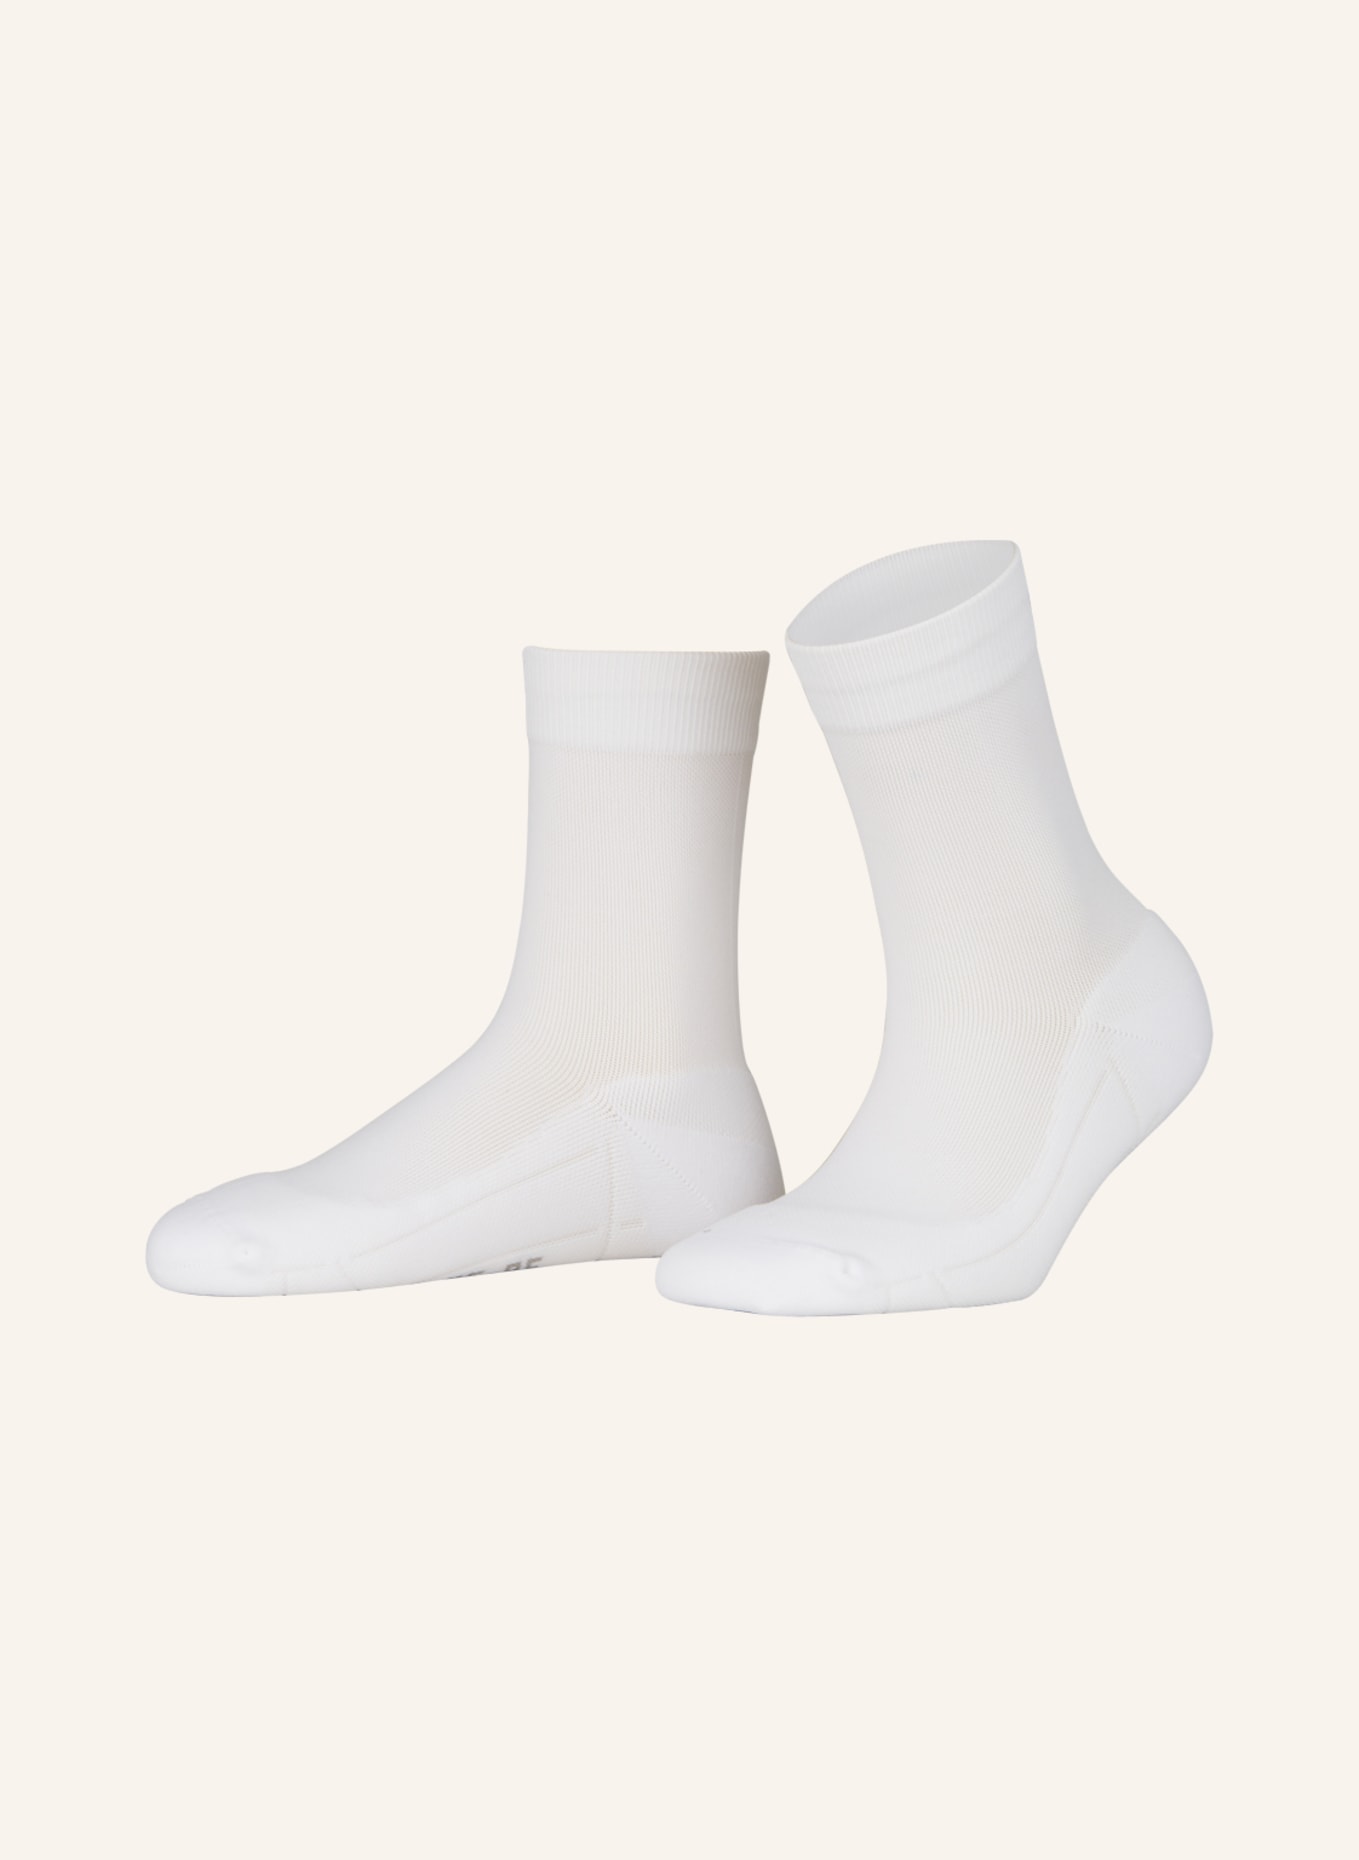 ITEM m6 Socken SNEAKER CONSIOUS COTTON PIQUÉ, Farbe: WEISS (Bild 1)